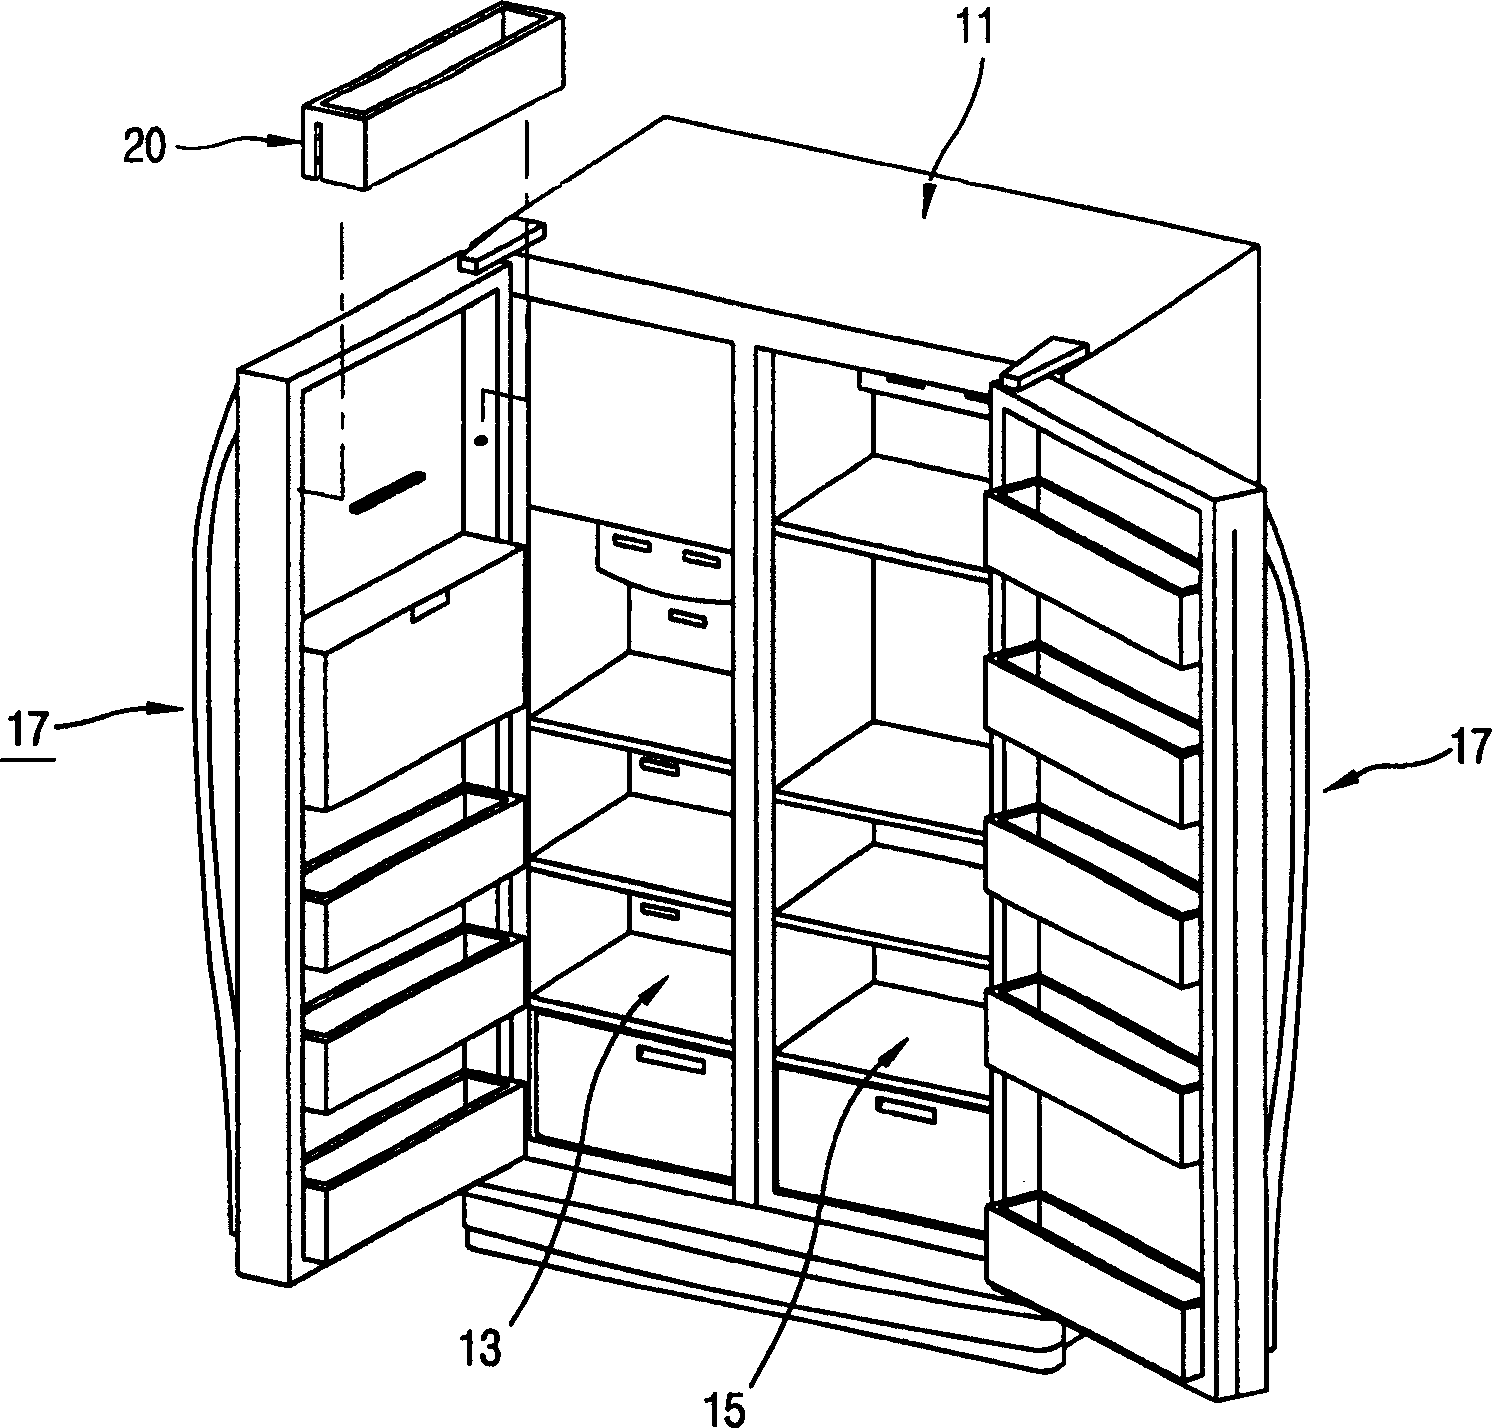 Refrigerator with adjustable storing basket